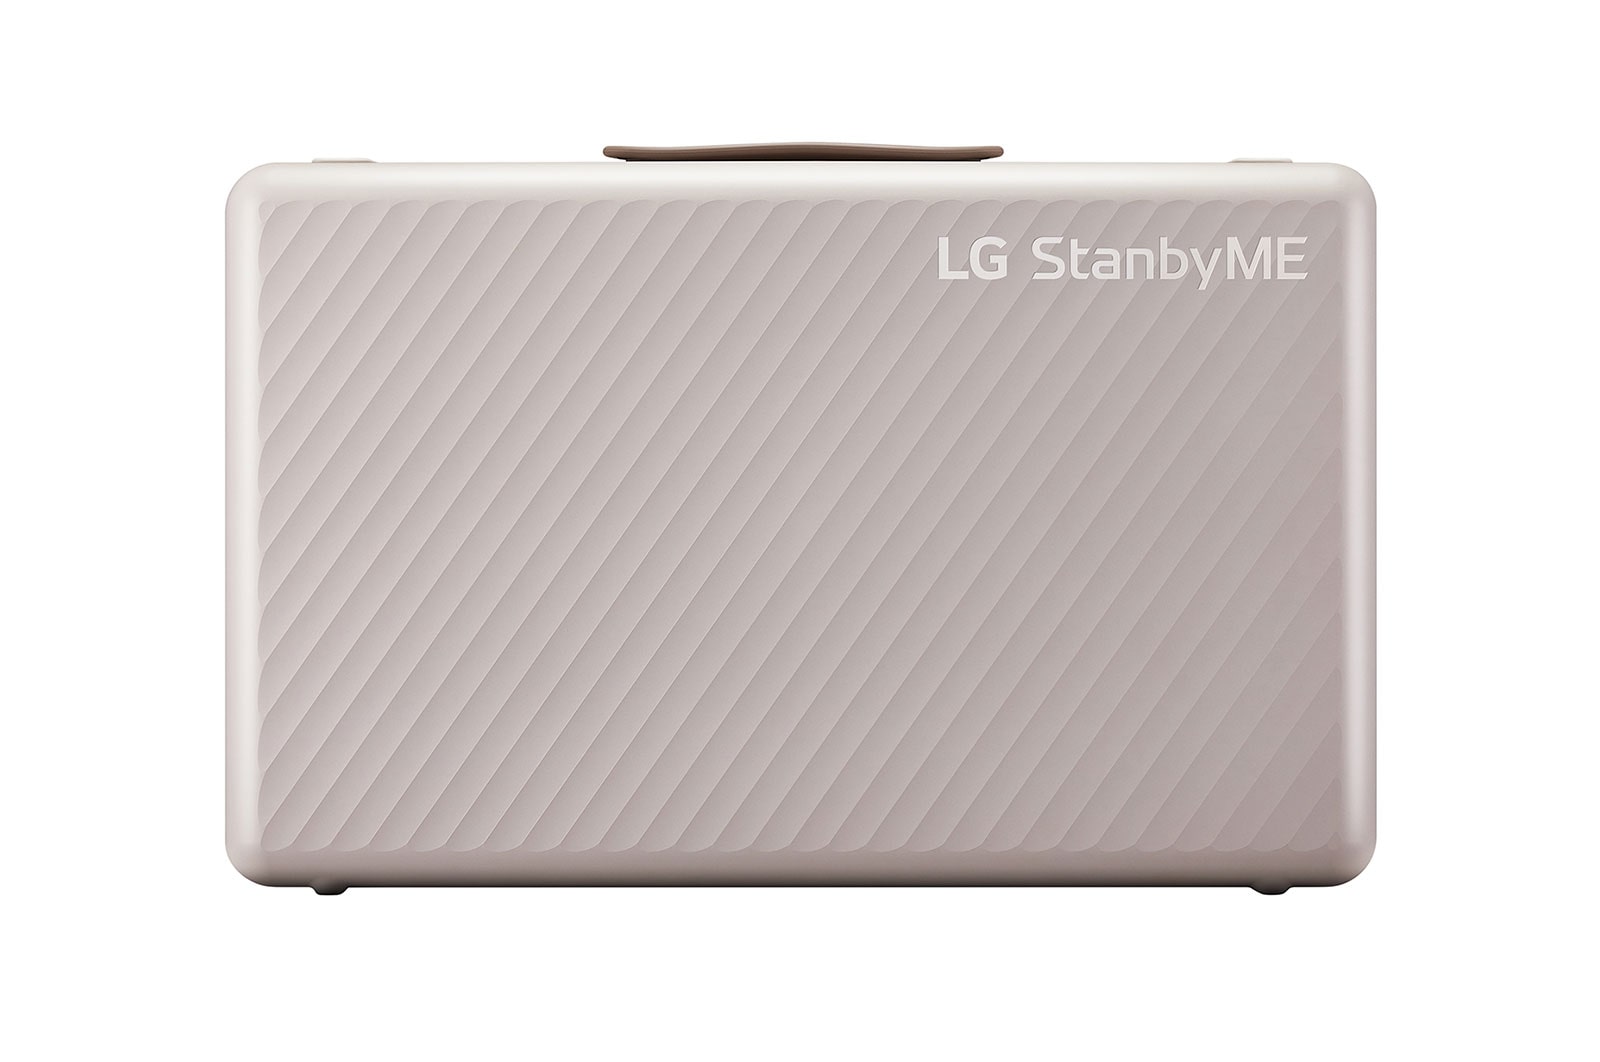 LG StanbyME Go - 27 inç FHD, Çanta Tasarımlı, Dokunmatik, Döndürülebilir, Taşınabilir Ekran, 3 Saat Pil Ömrü, 27LX5QKNA